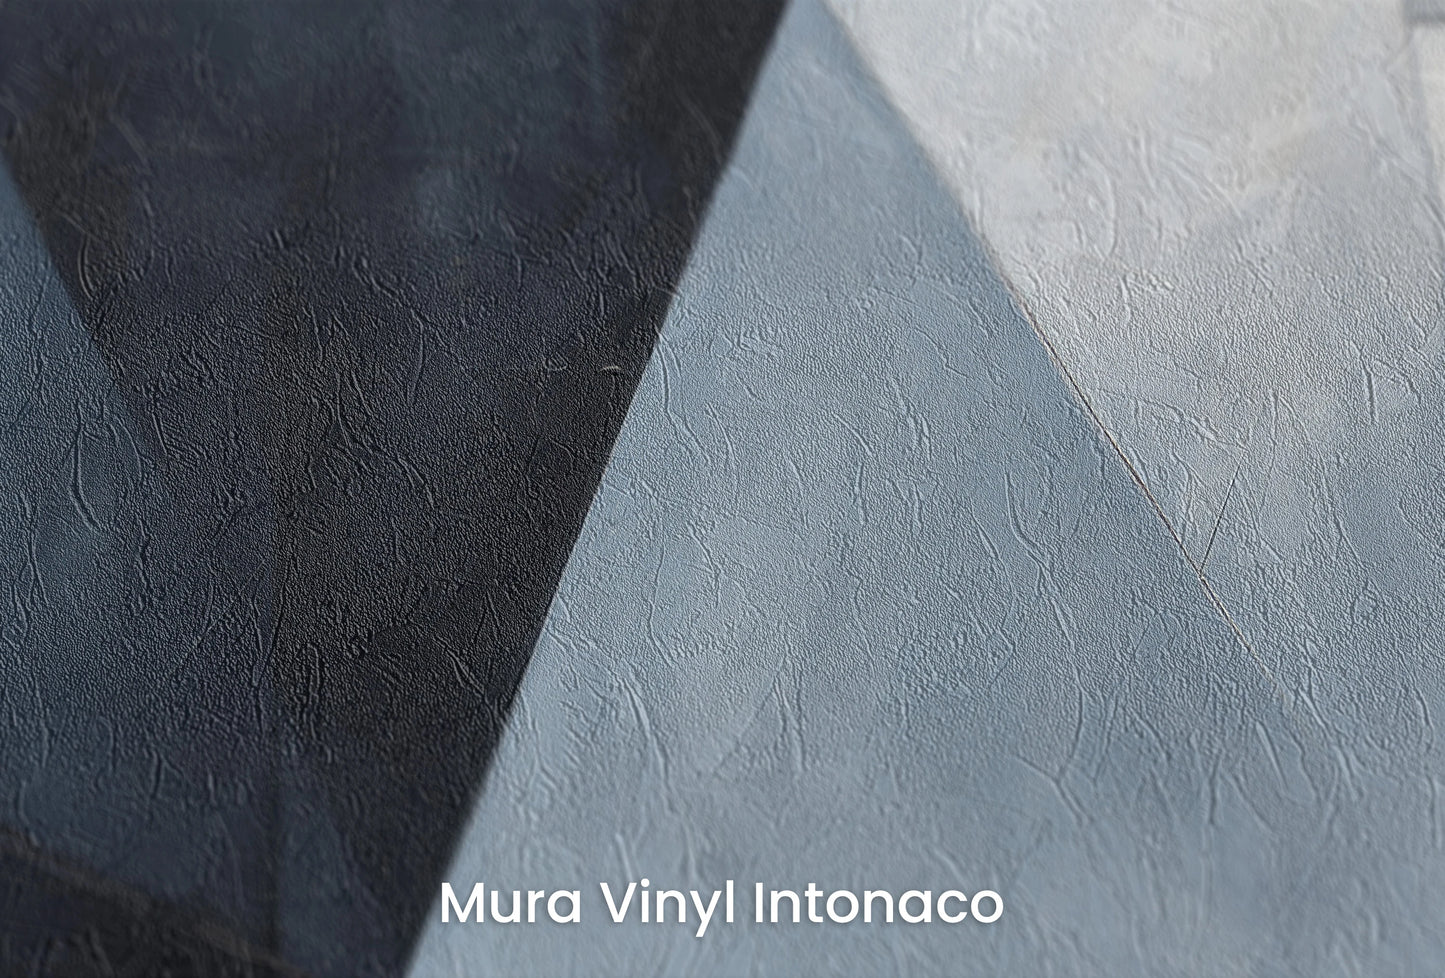 Zbliżenie na artystyczną fototapetę o nazwie Angular Elegance na podłożu Mura Vinyl Intonaco - struktura tartego tynku.